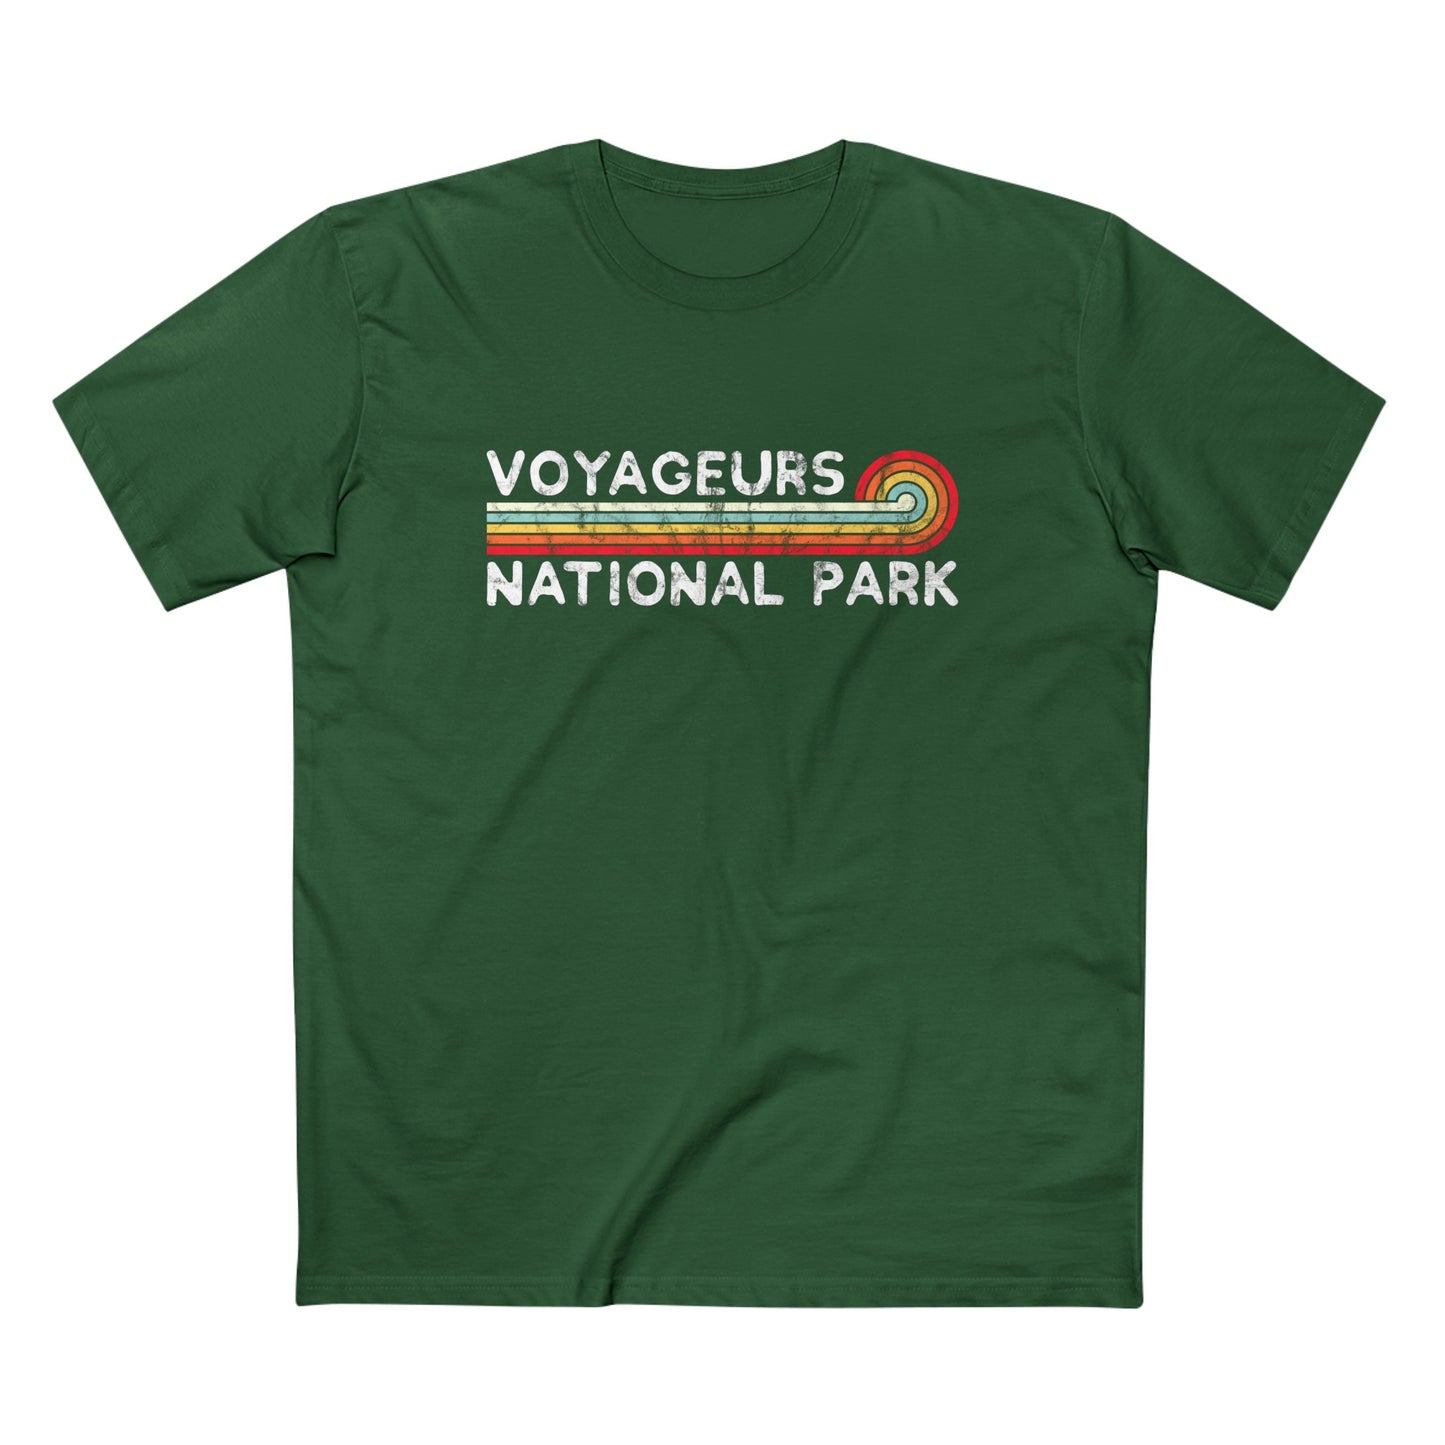 Voyageurs National Park T-Shirt - Vintage Stretched Sunrise